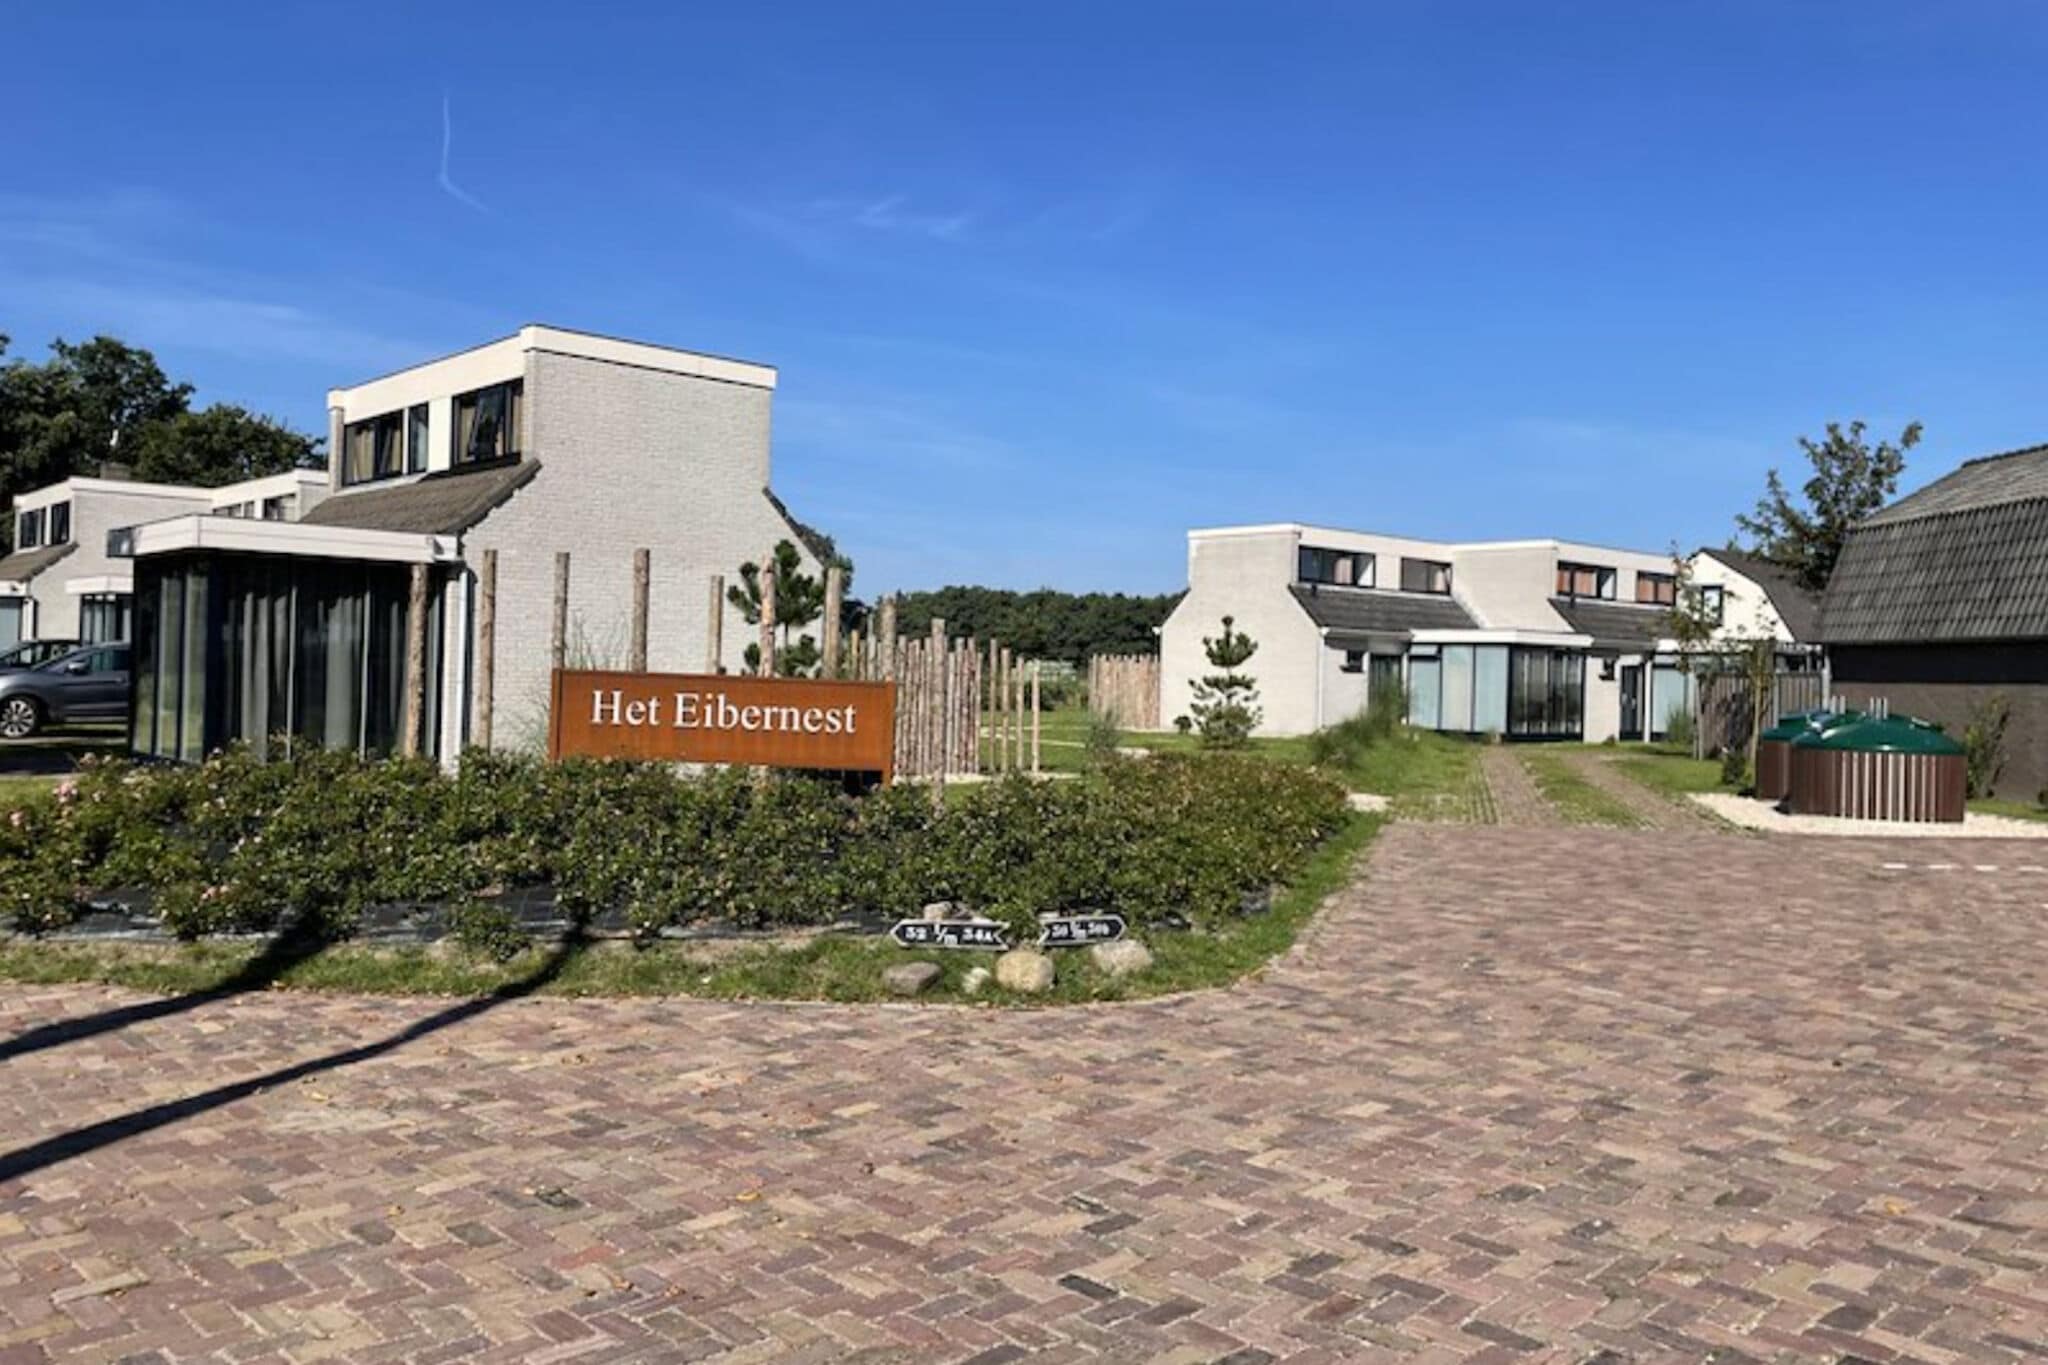 Gezellig huis met vrij uitzicht, gelegen op Texel